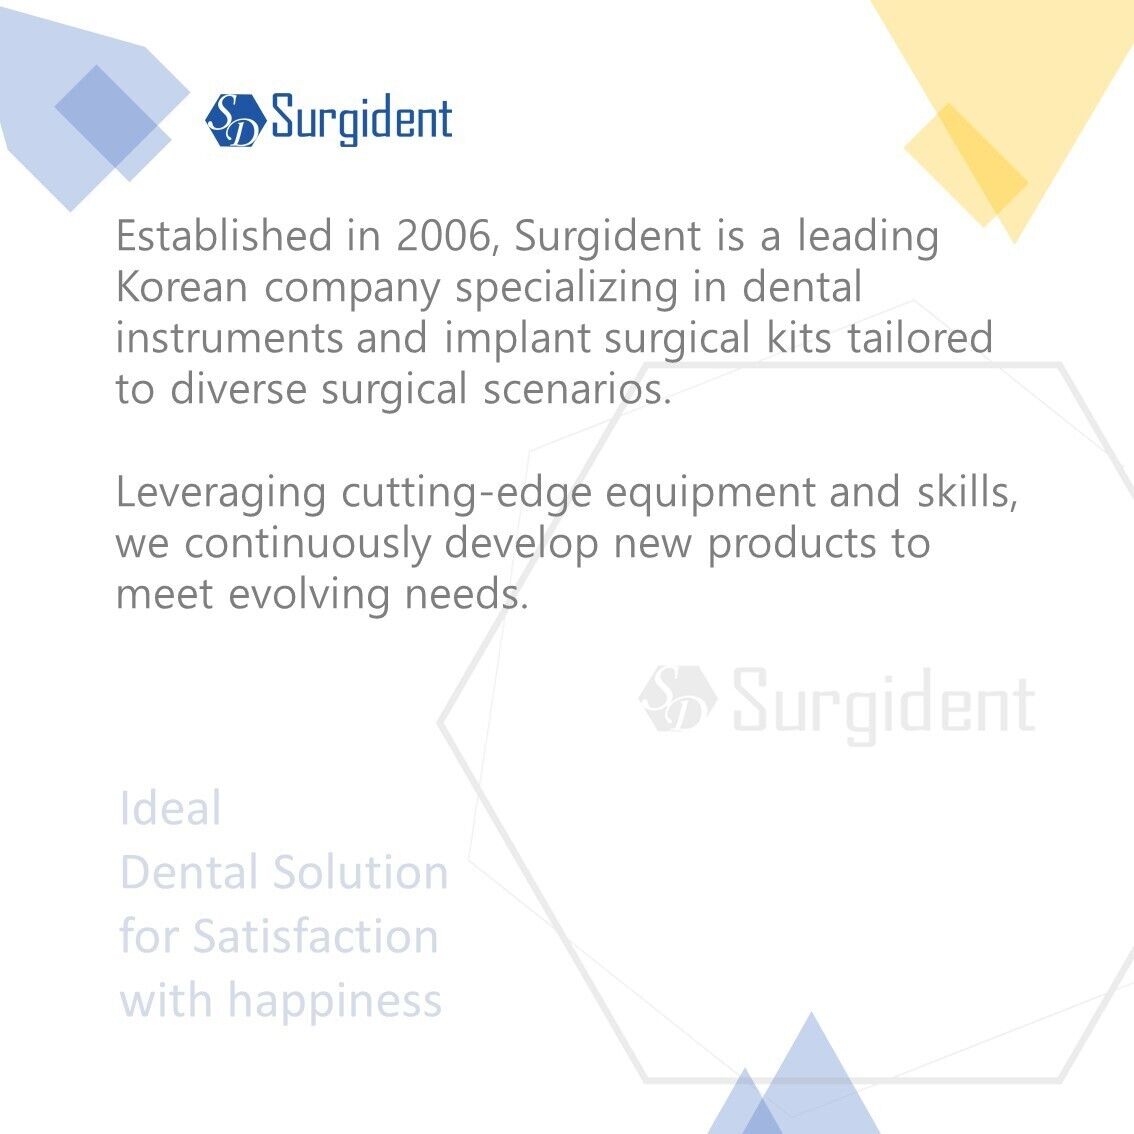 Surgident Dental Instrument BONE PACKER GAG-09